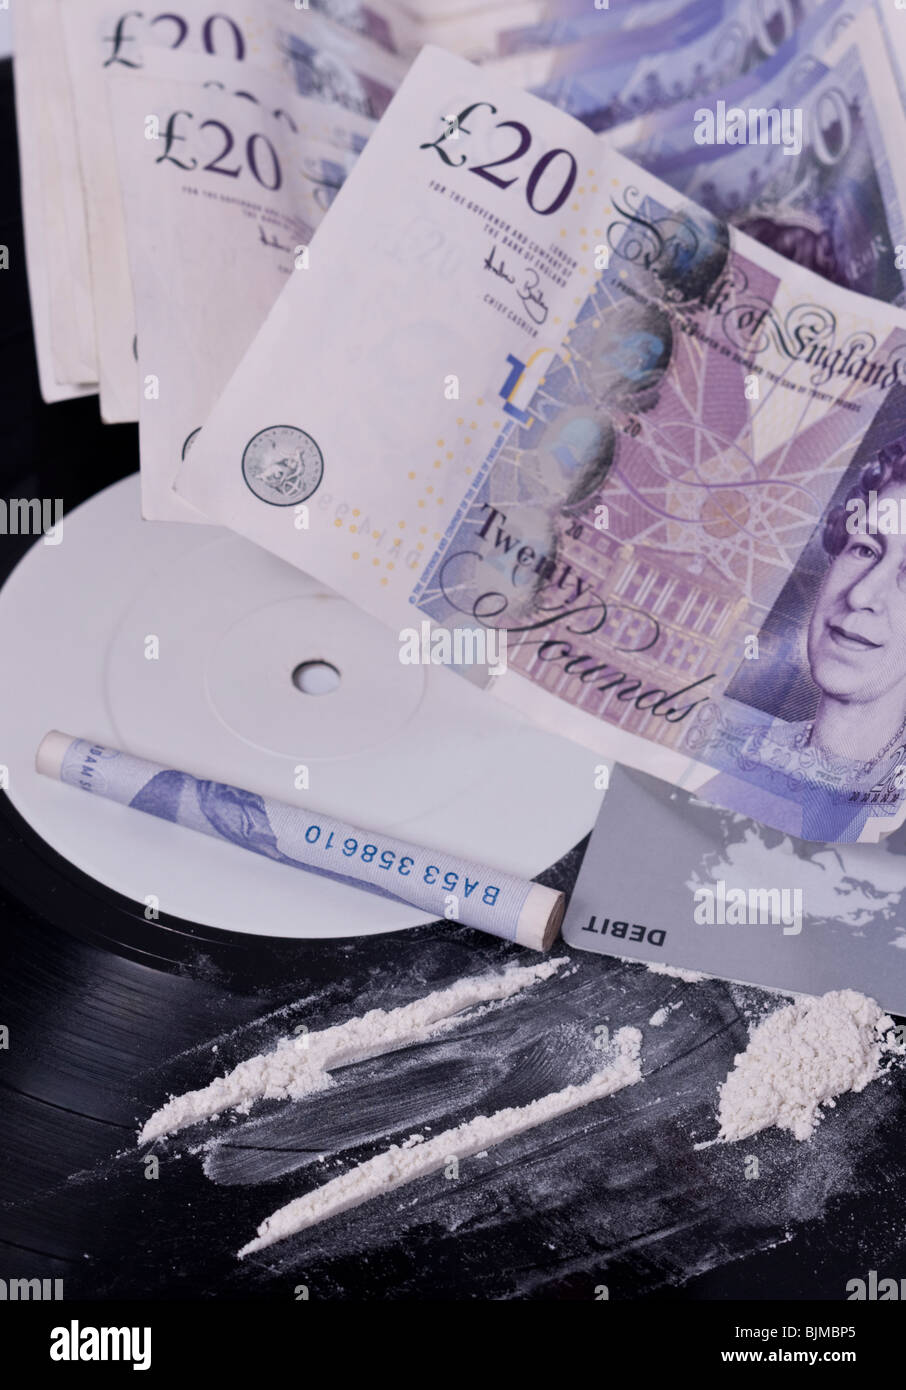 Une photo montrant l'usage de la cocaïne dans l'industrie de la musique avec des lignes de poudre blanche sur une étiquette blanche notice et de l'argent au Royaume-Uni Banque D'Images